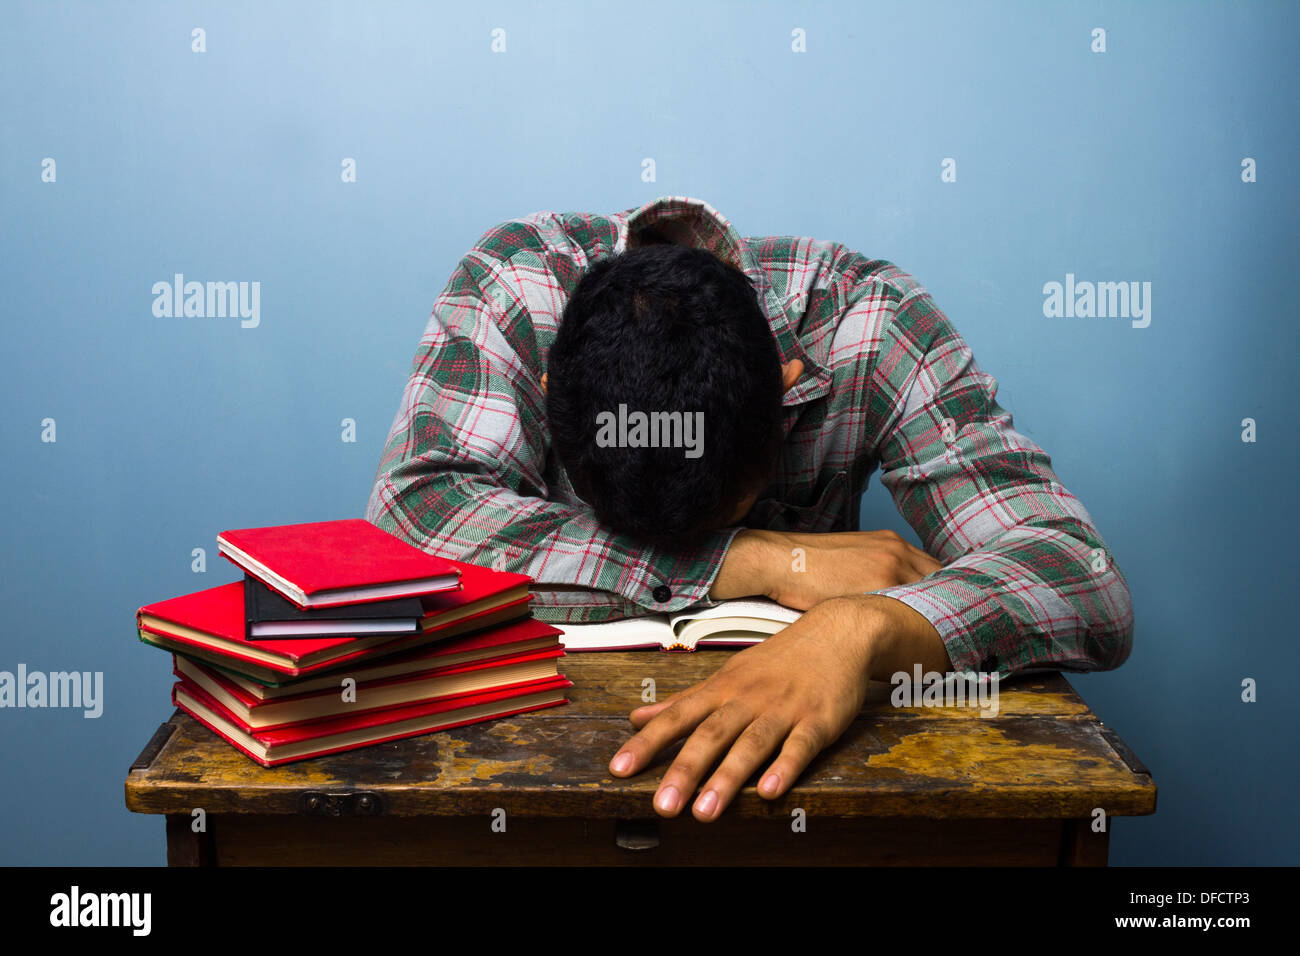 Jeune homme fatigué dort sur une pile de livres Banque D'Images